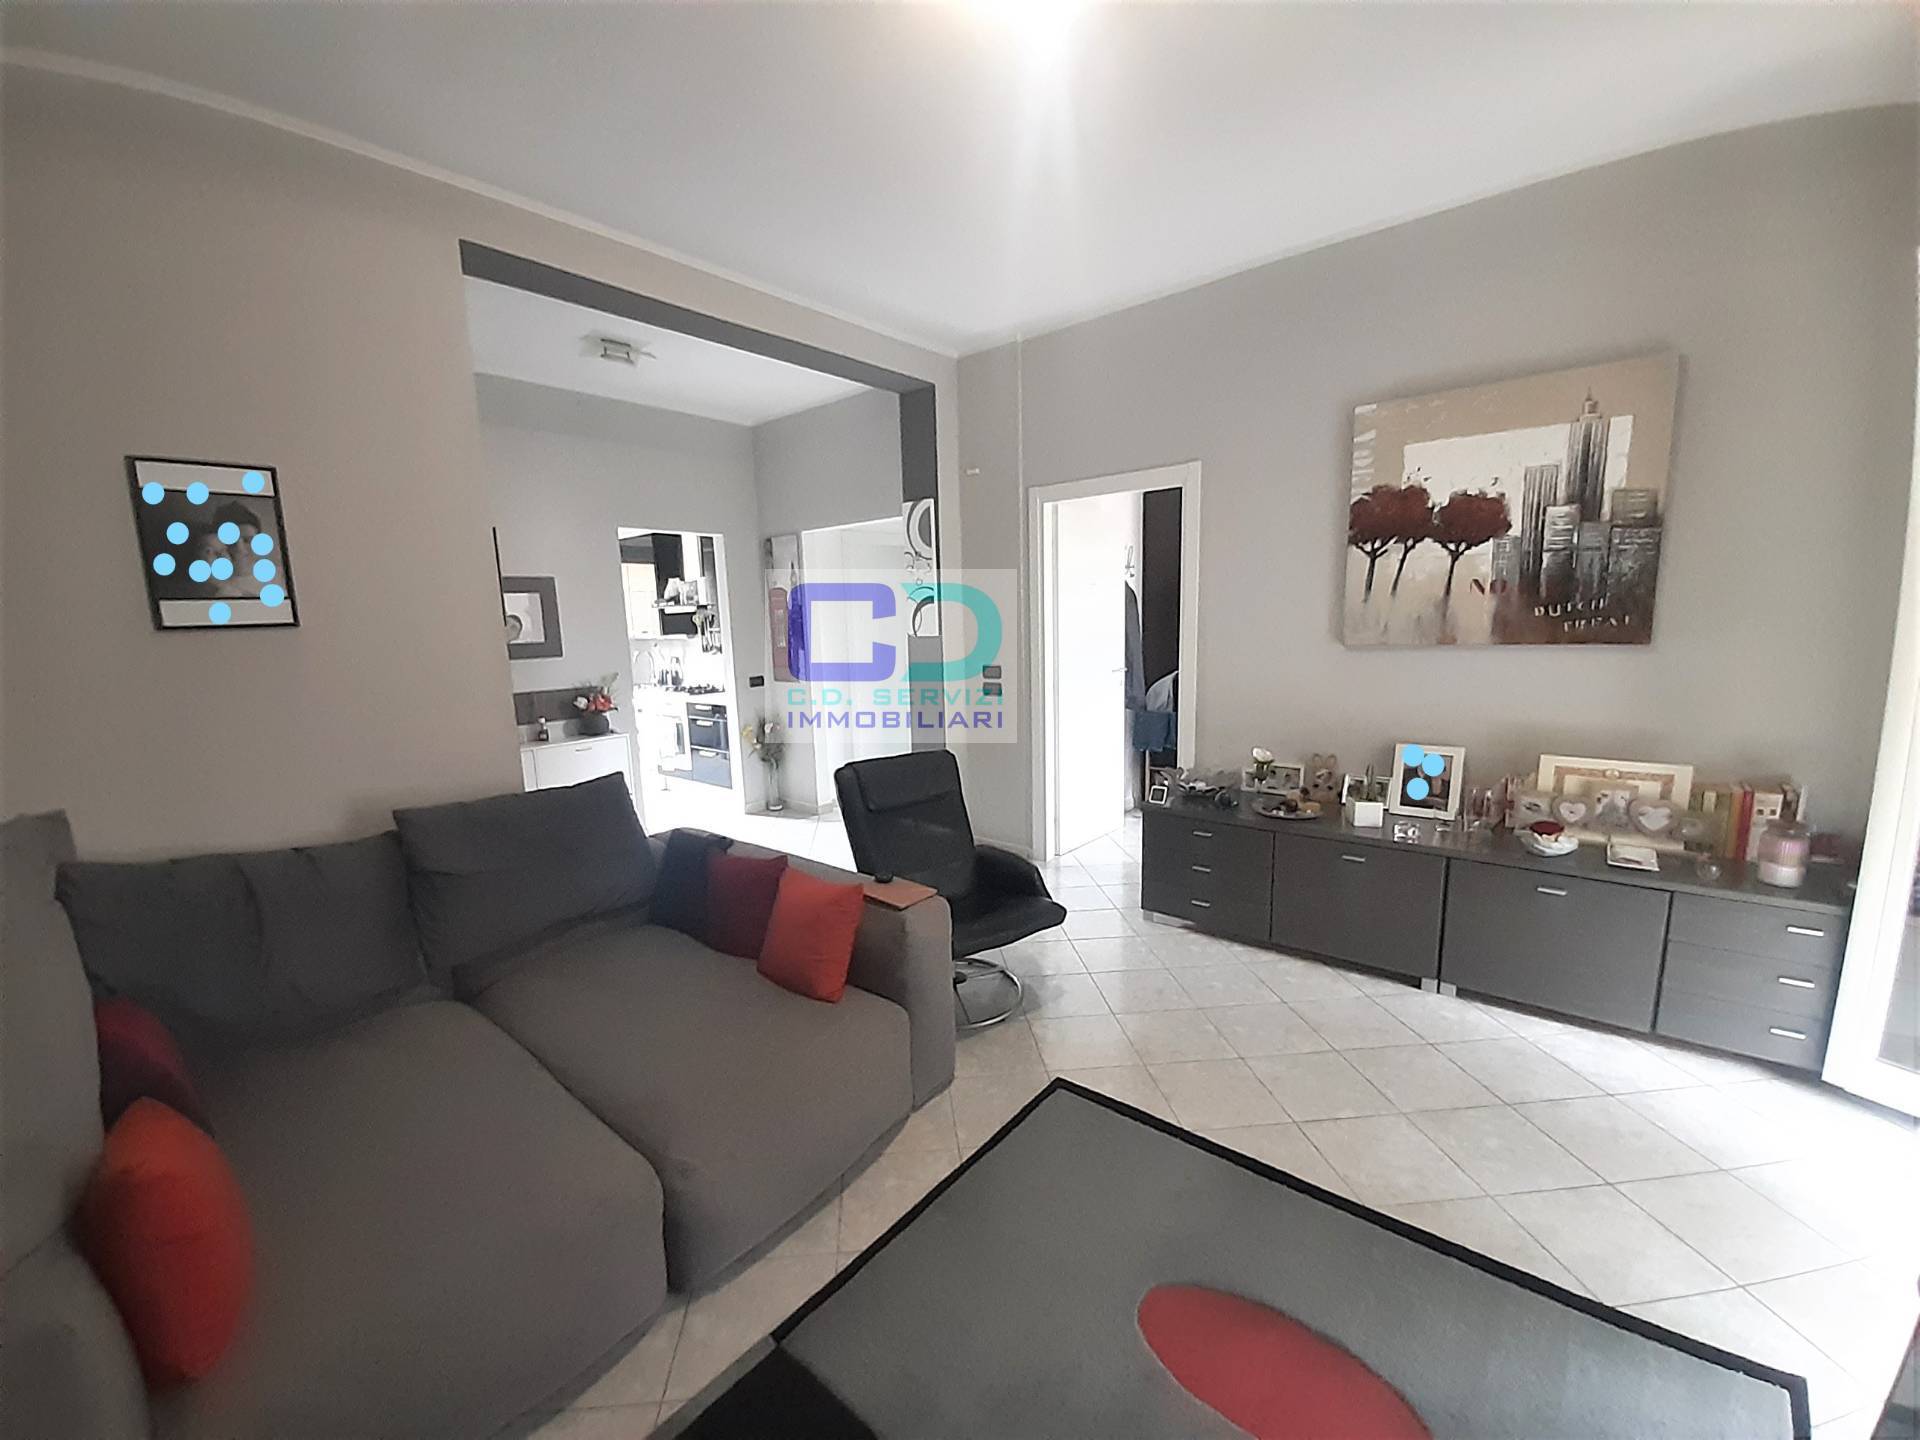 Appartamento in vendita a Cassano d'Adda, 3 locali, prezzo € 130.000 | PortaleAgenzieImmobiliari.it